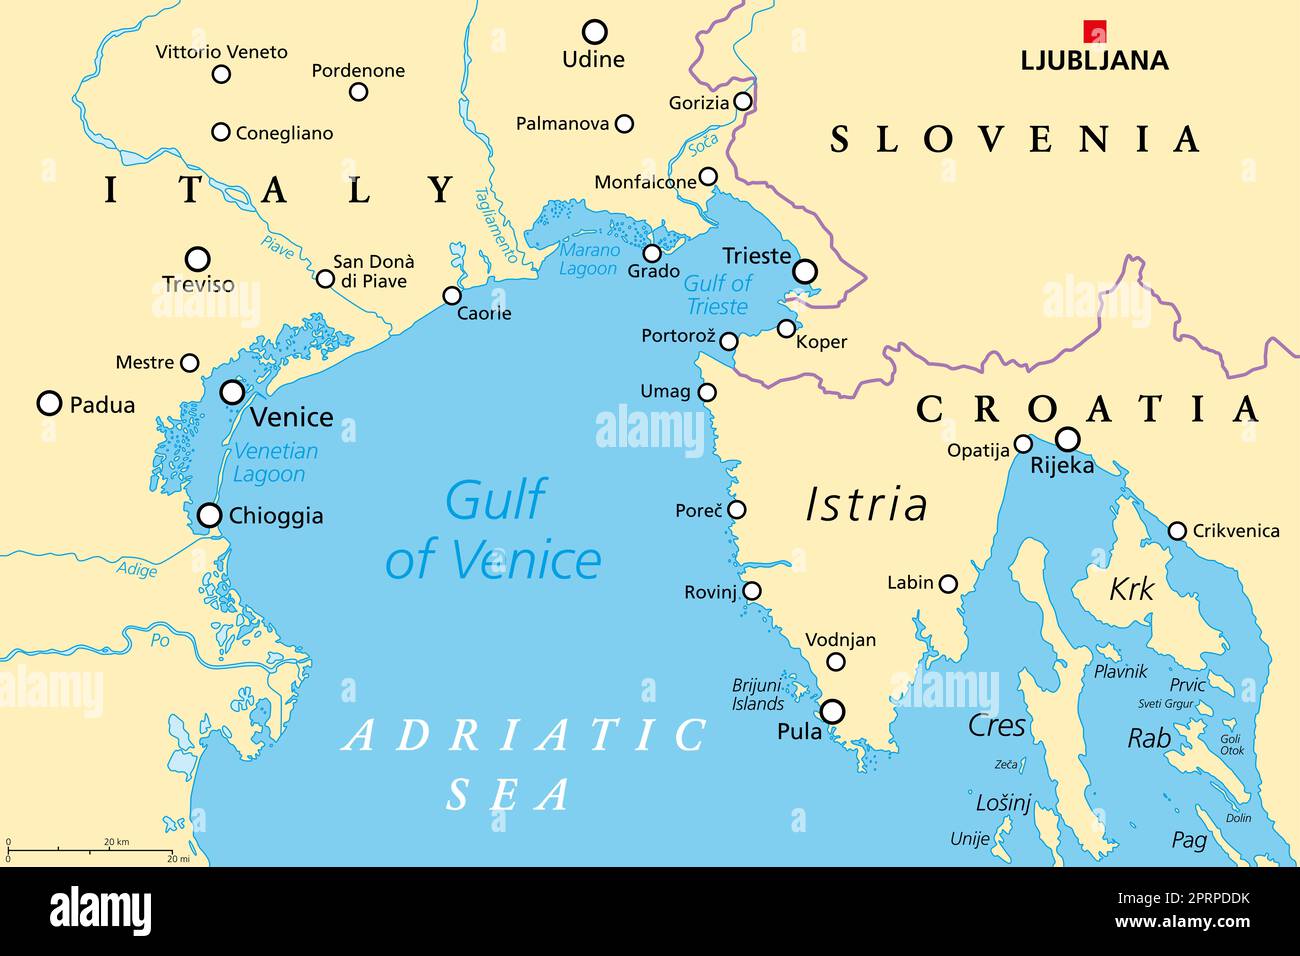 Golf von Venedig, politische Karte. Begrenzt durch das Po-Delta in Italien und die istrische Halbinsel in Kroatien, die ebenfalls an Slowenien grenzt. Adria. Stockfoto